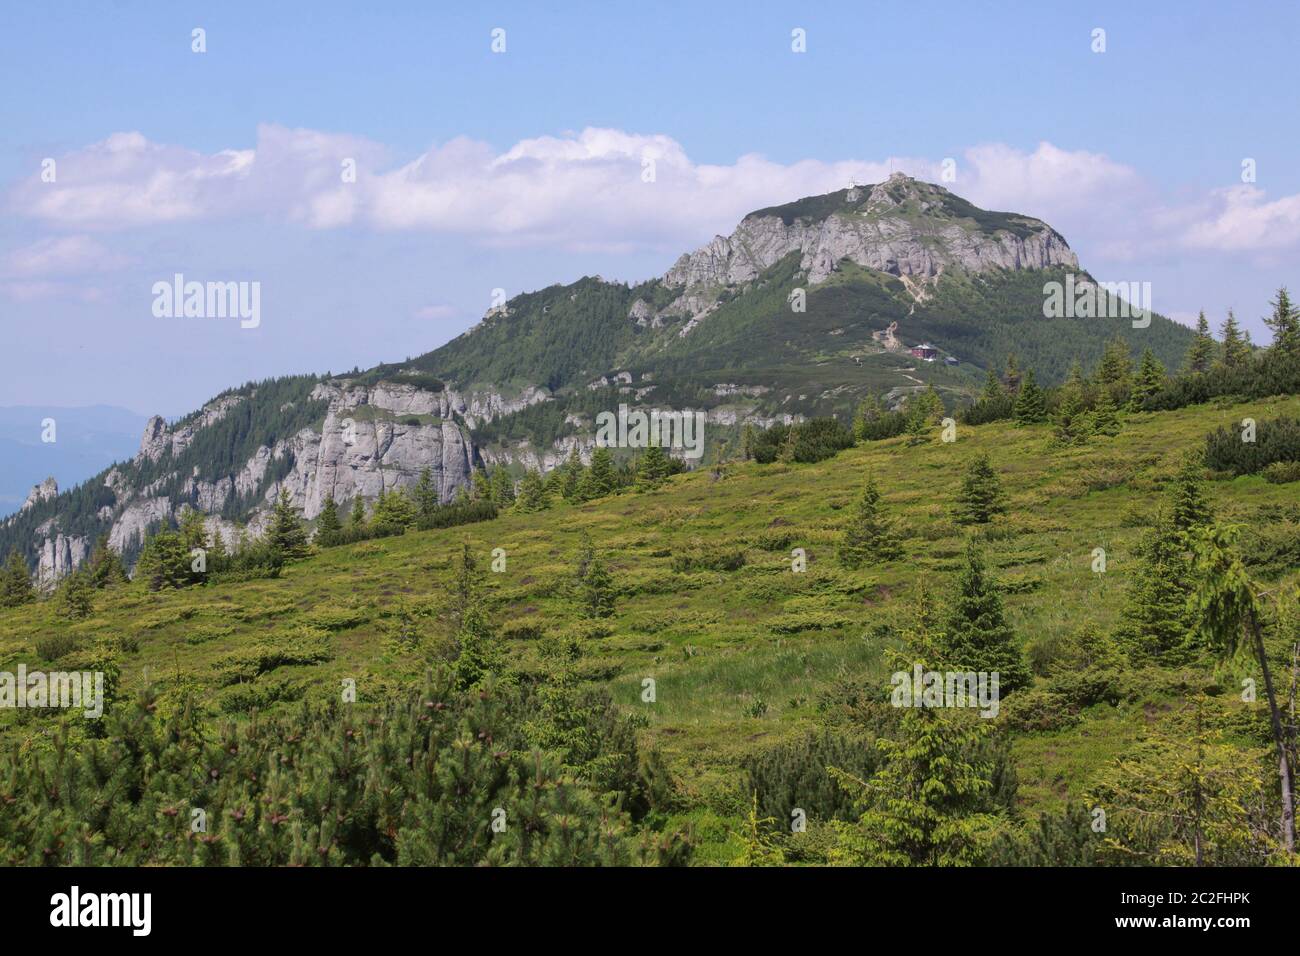 Das Ceahlau-Massiv ist einer der schönsten Berge Rumäniens. Sie würden es ein sehr gutes Wanderziel finden, da es markierte Wanderwege gibt Stockfoto